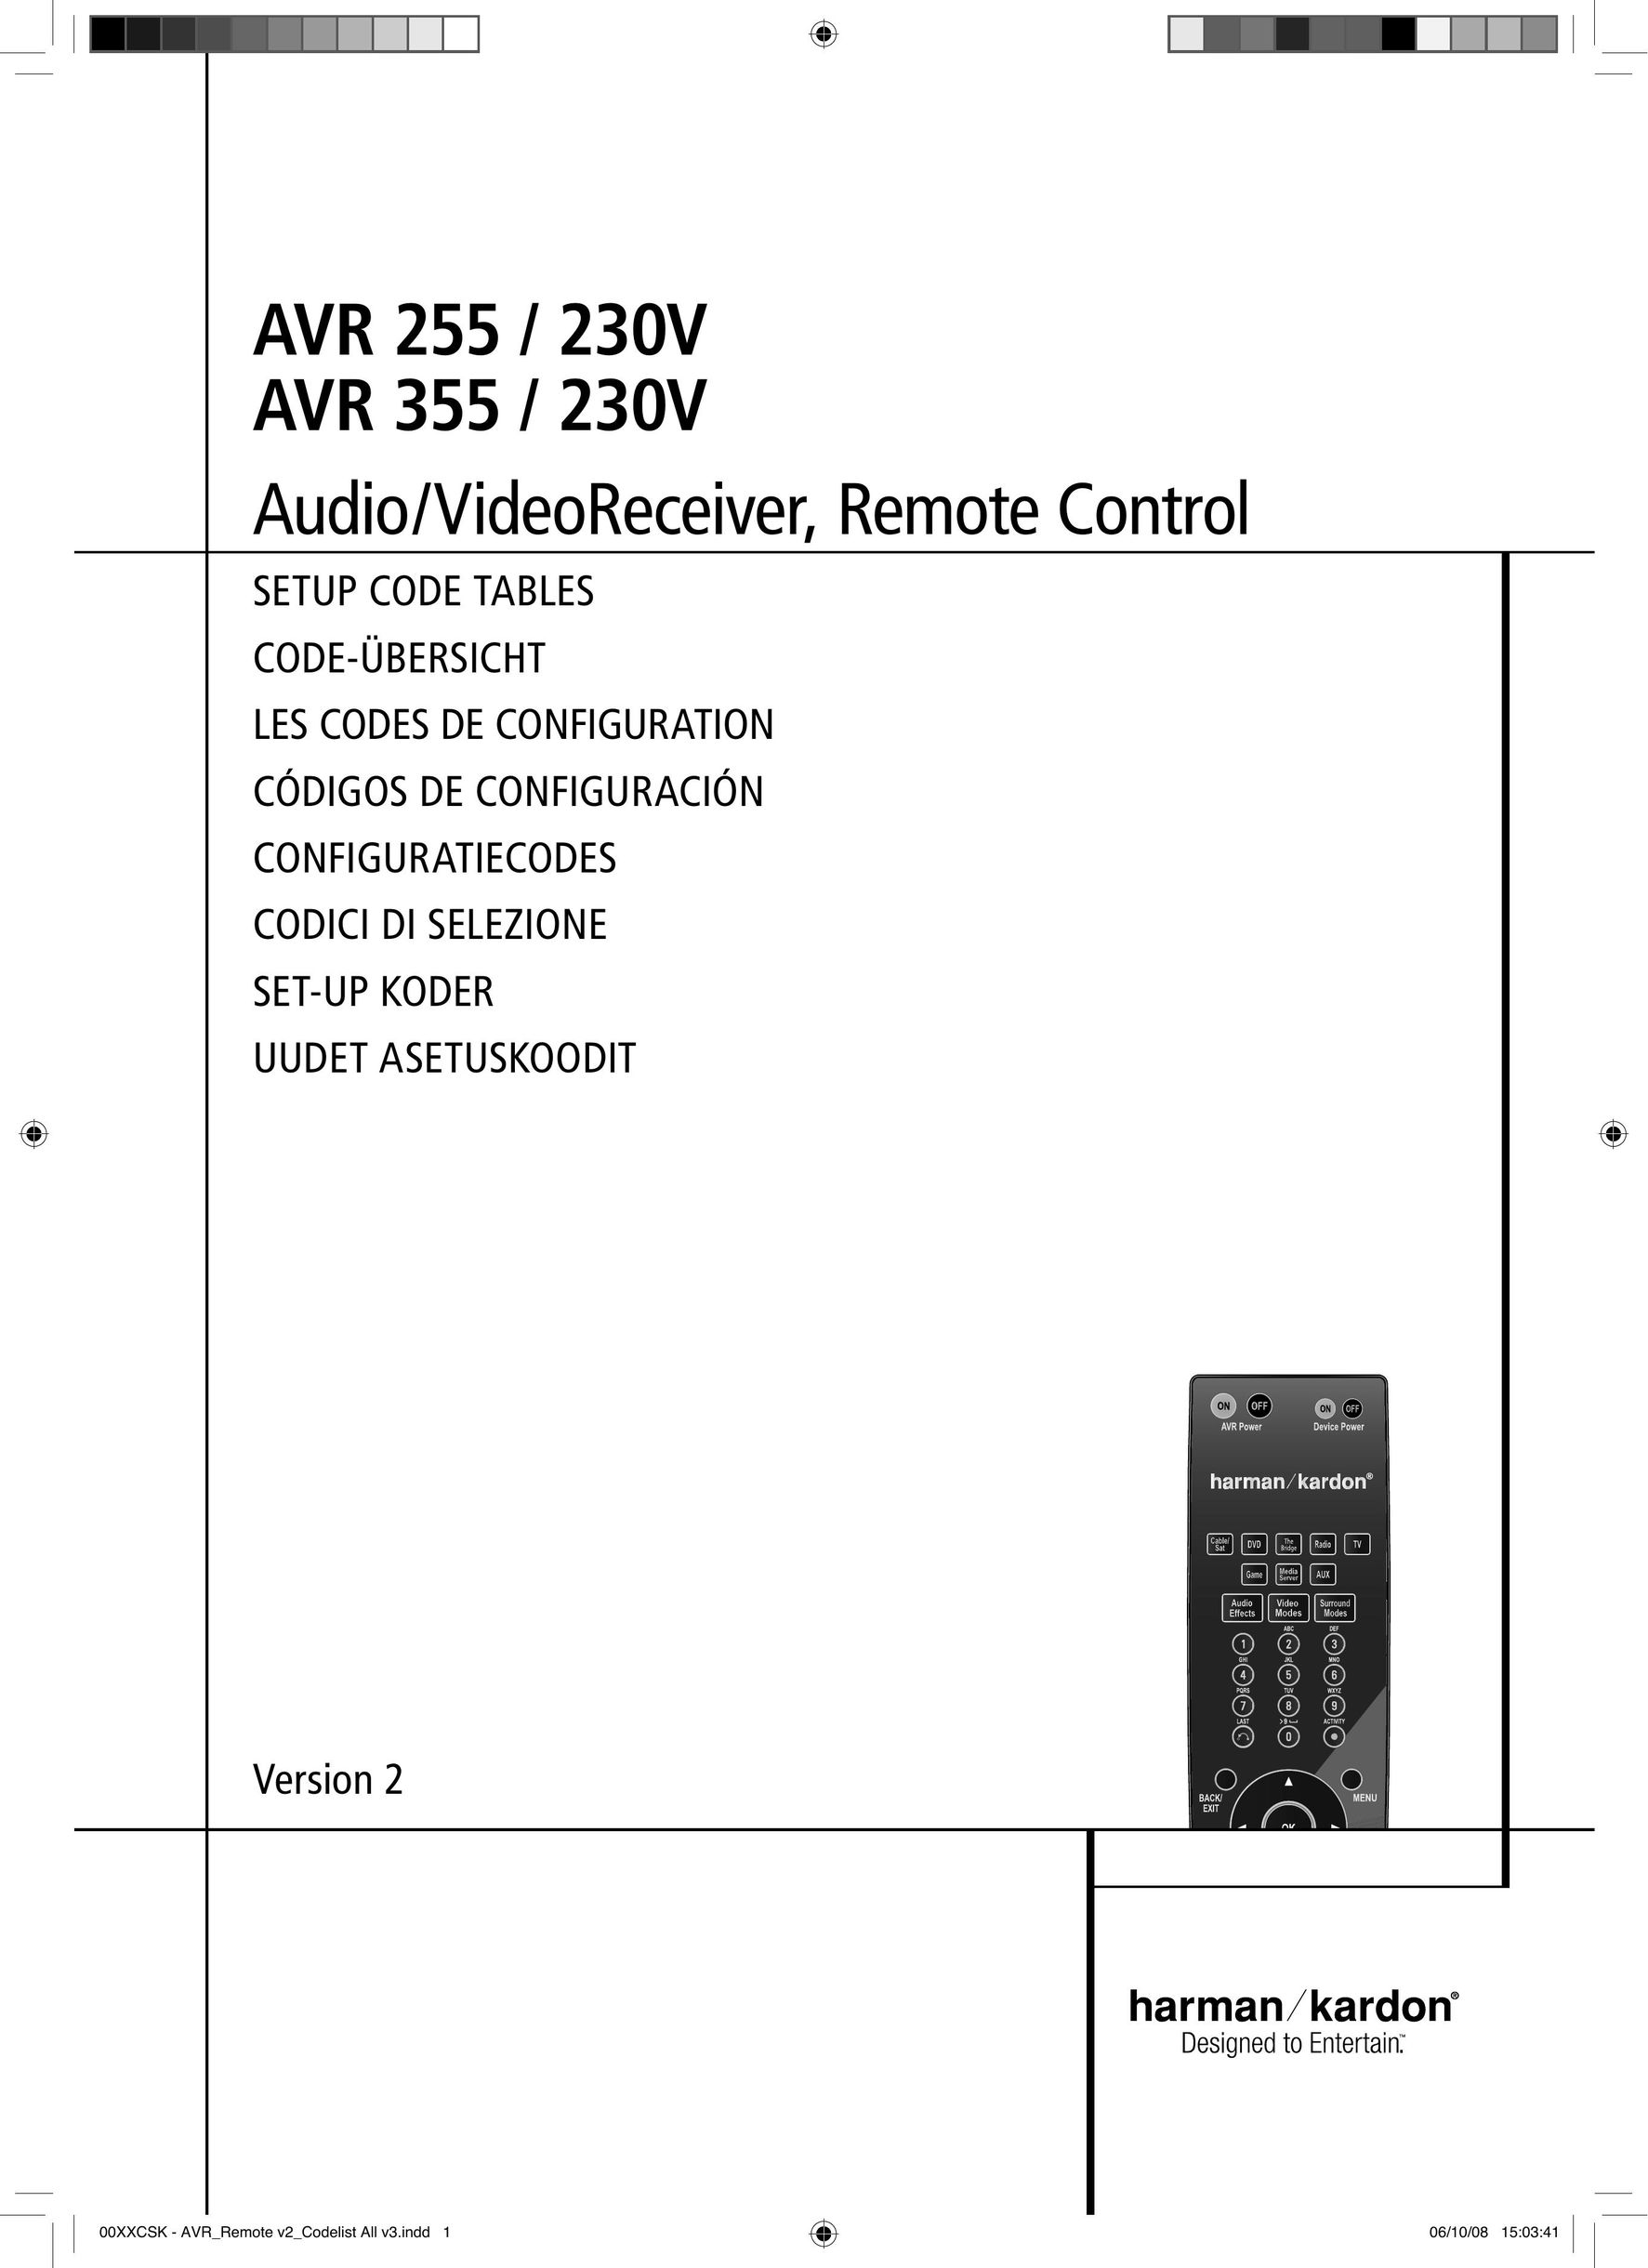 Harman-Kardon AVR 255 / 230V Stereo Receiver User Manual